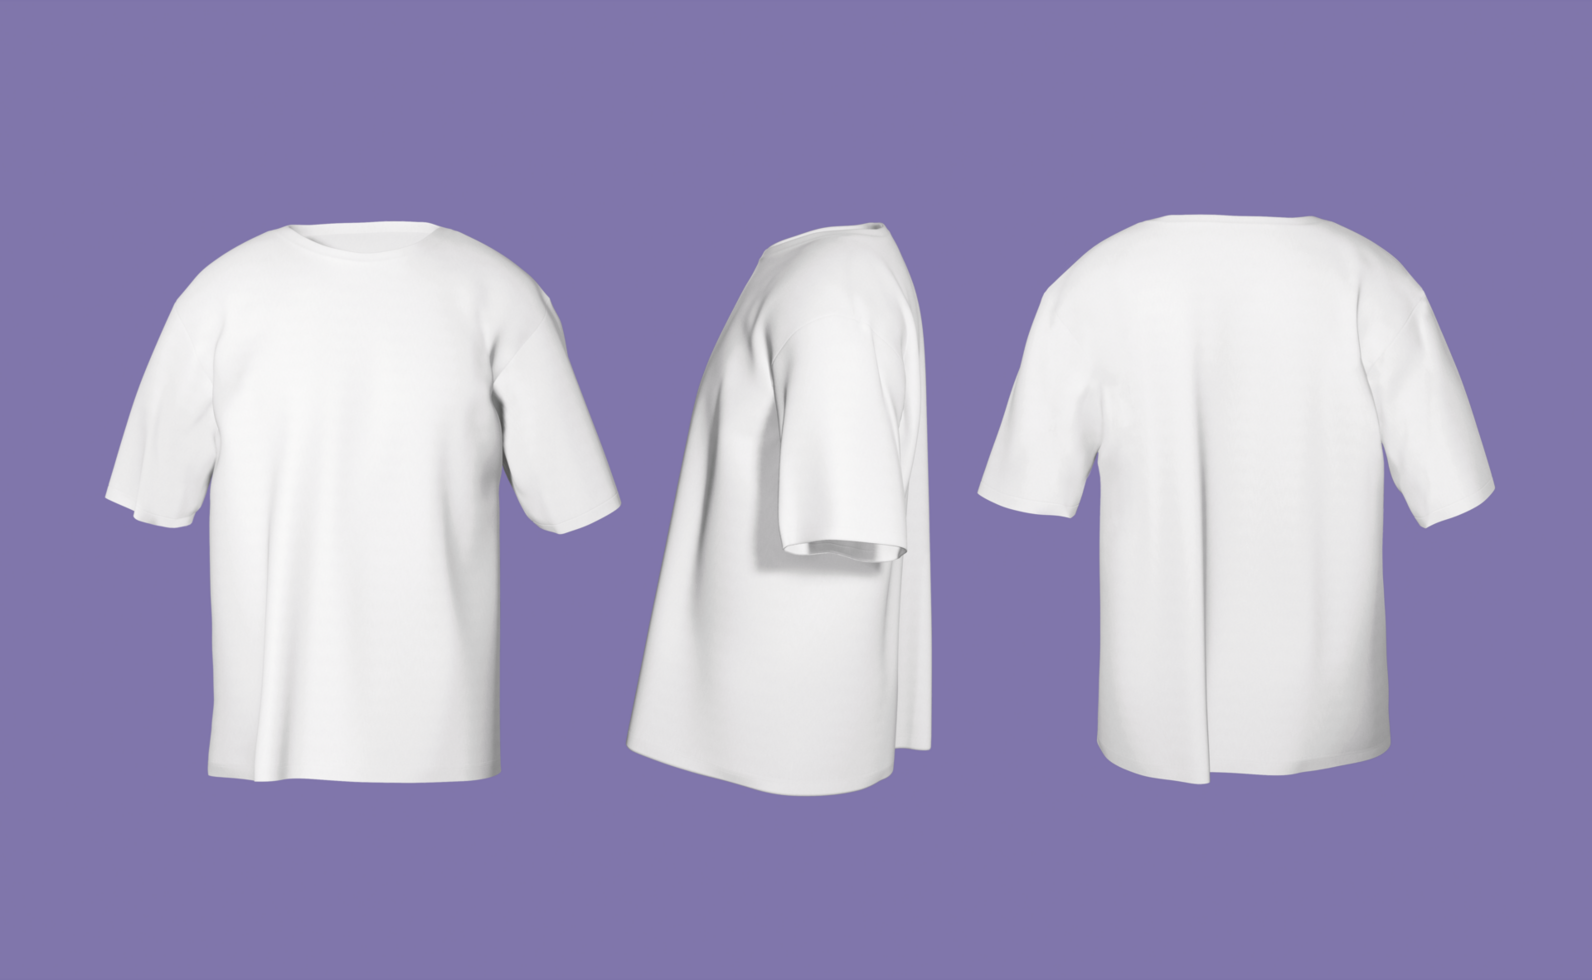 reeks van wit te groot t-shirt mockups 3d geven ronde nek voor branding psd